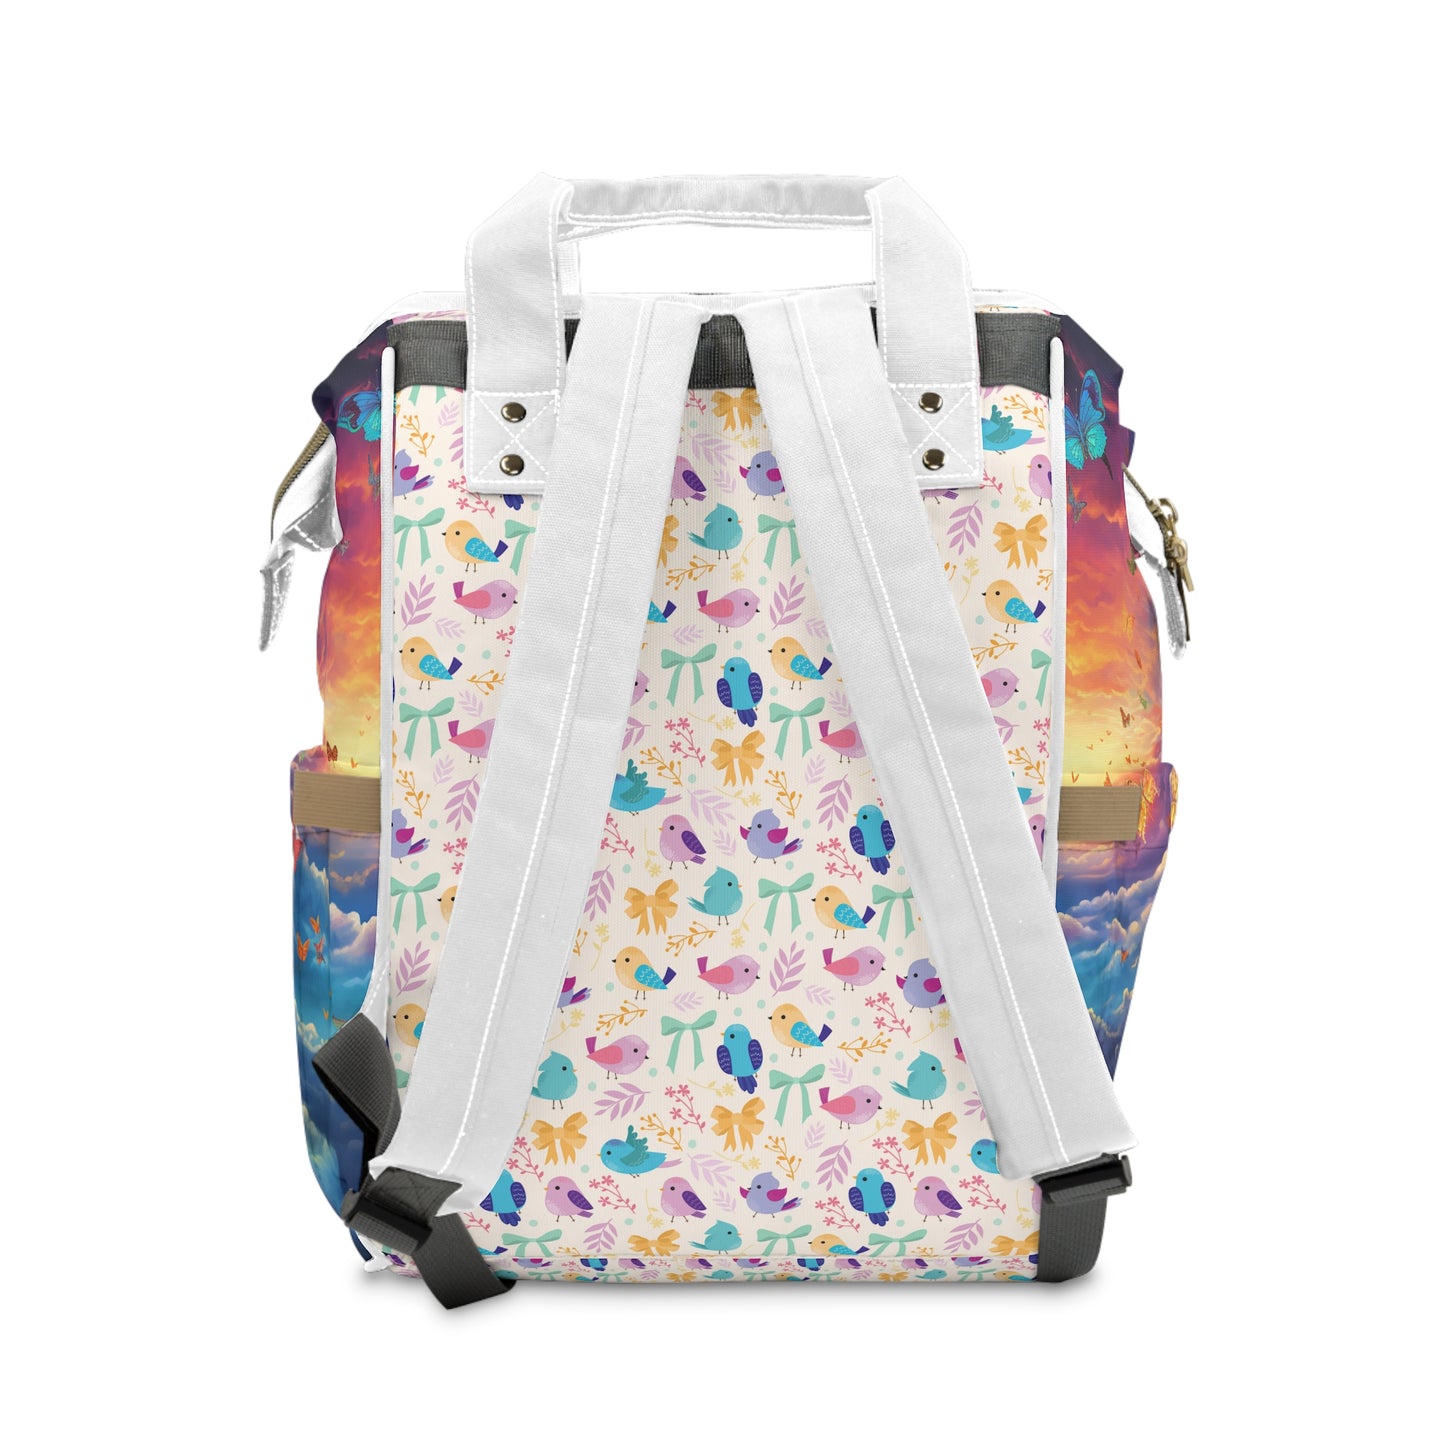 Niccie Butterflies Diaper Backpack: Multifunctional Marvel